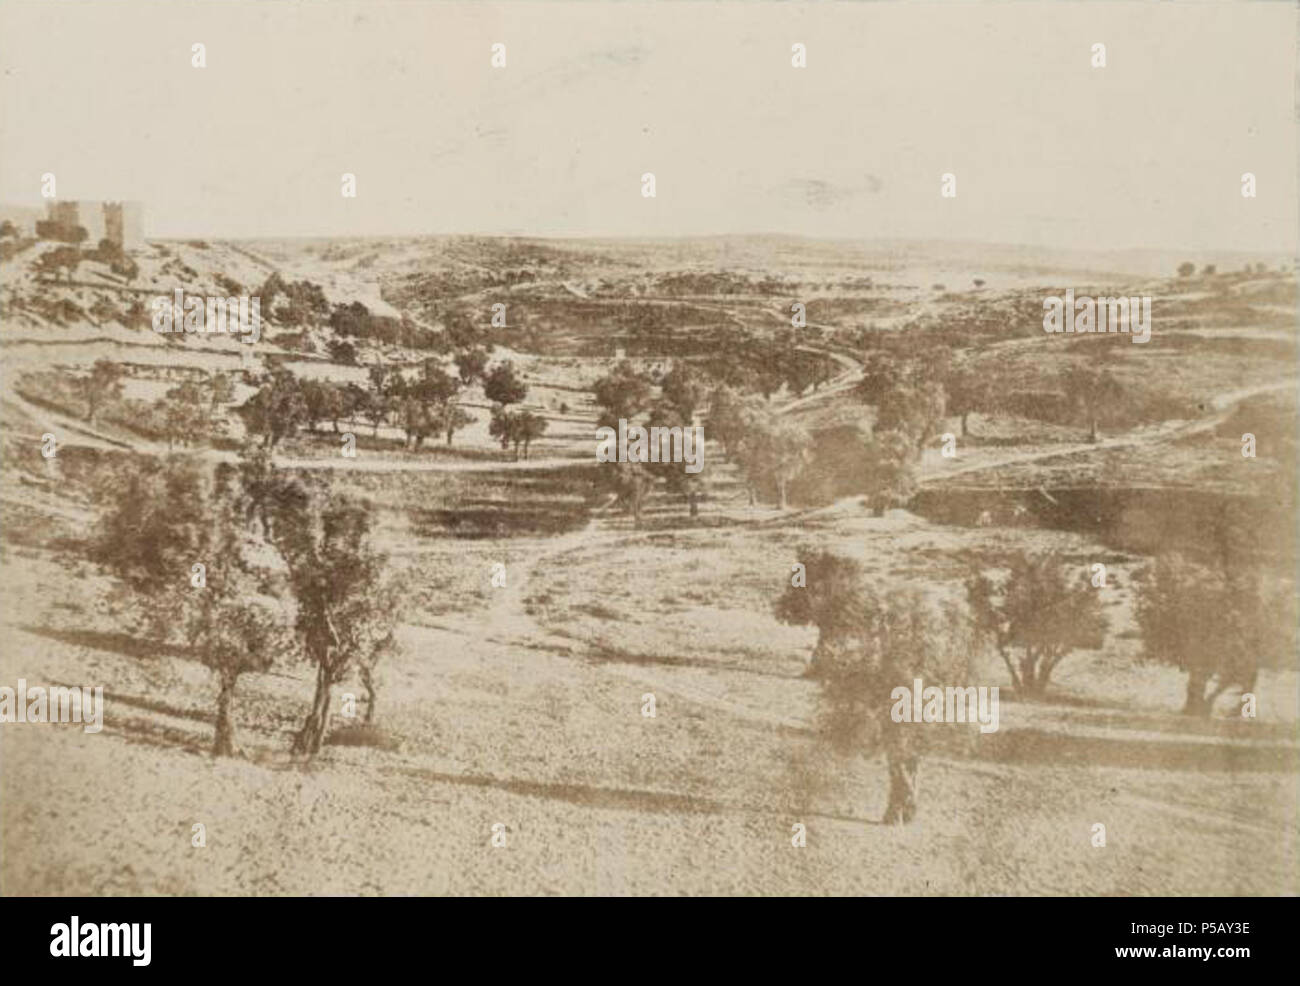 N/A. Français : Chemin de Beit-Lehem, Jerusalem. 1856. Auguste Salzmann; cropped from original file by Kordas 49 A. Salzmann - Chemin de Beit-Lehem - Jerusalem Stock Photo